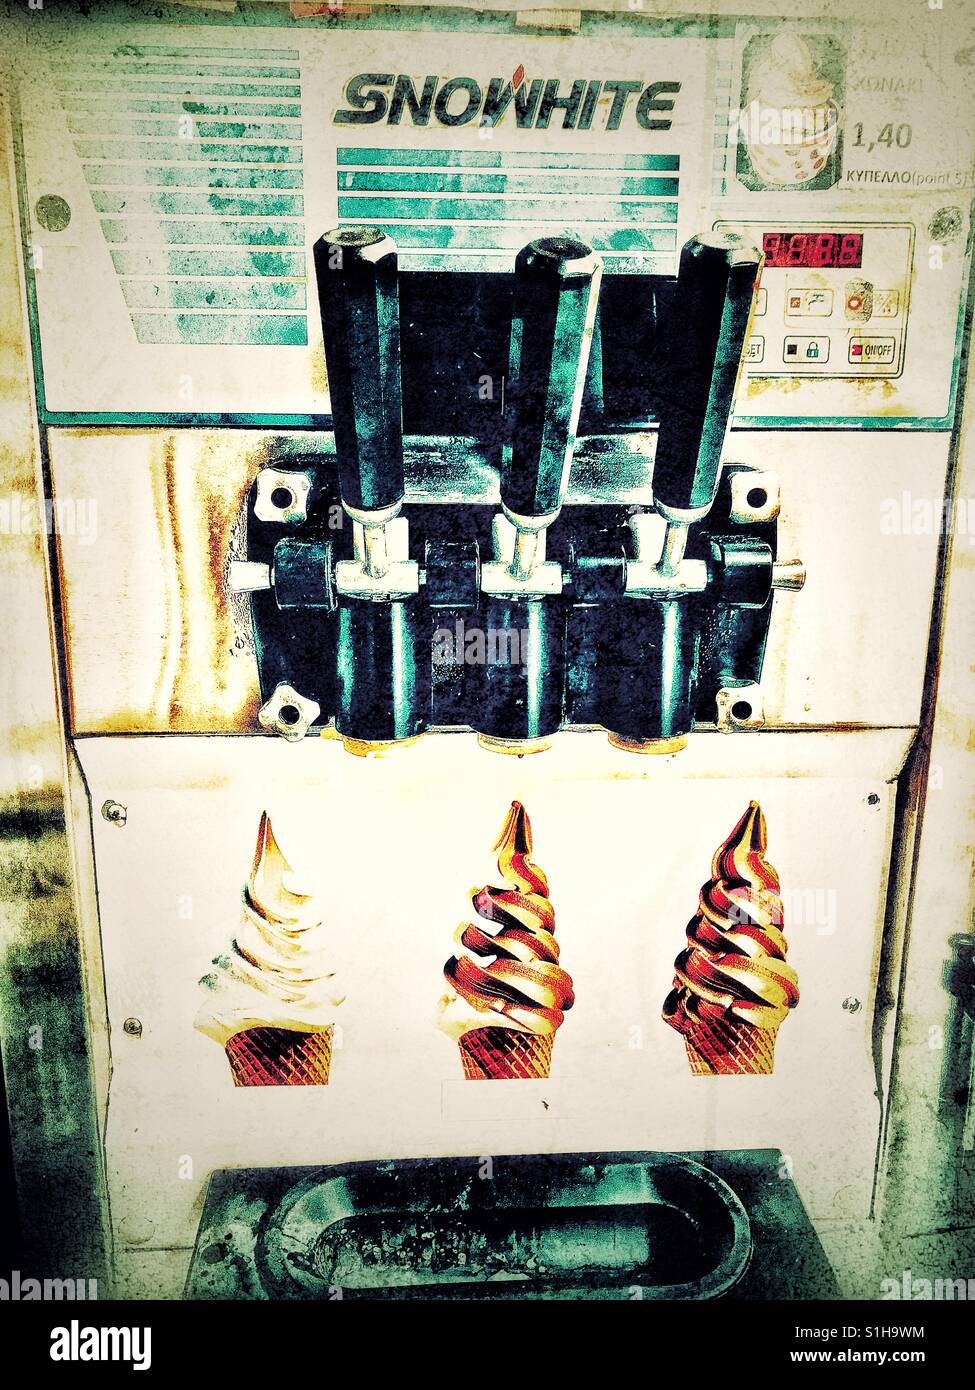 Vintage ice cream machine Stock Photo - Alamy